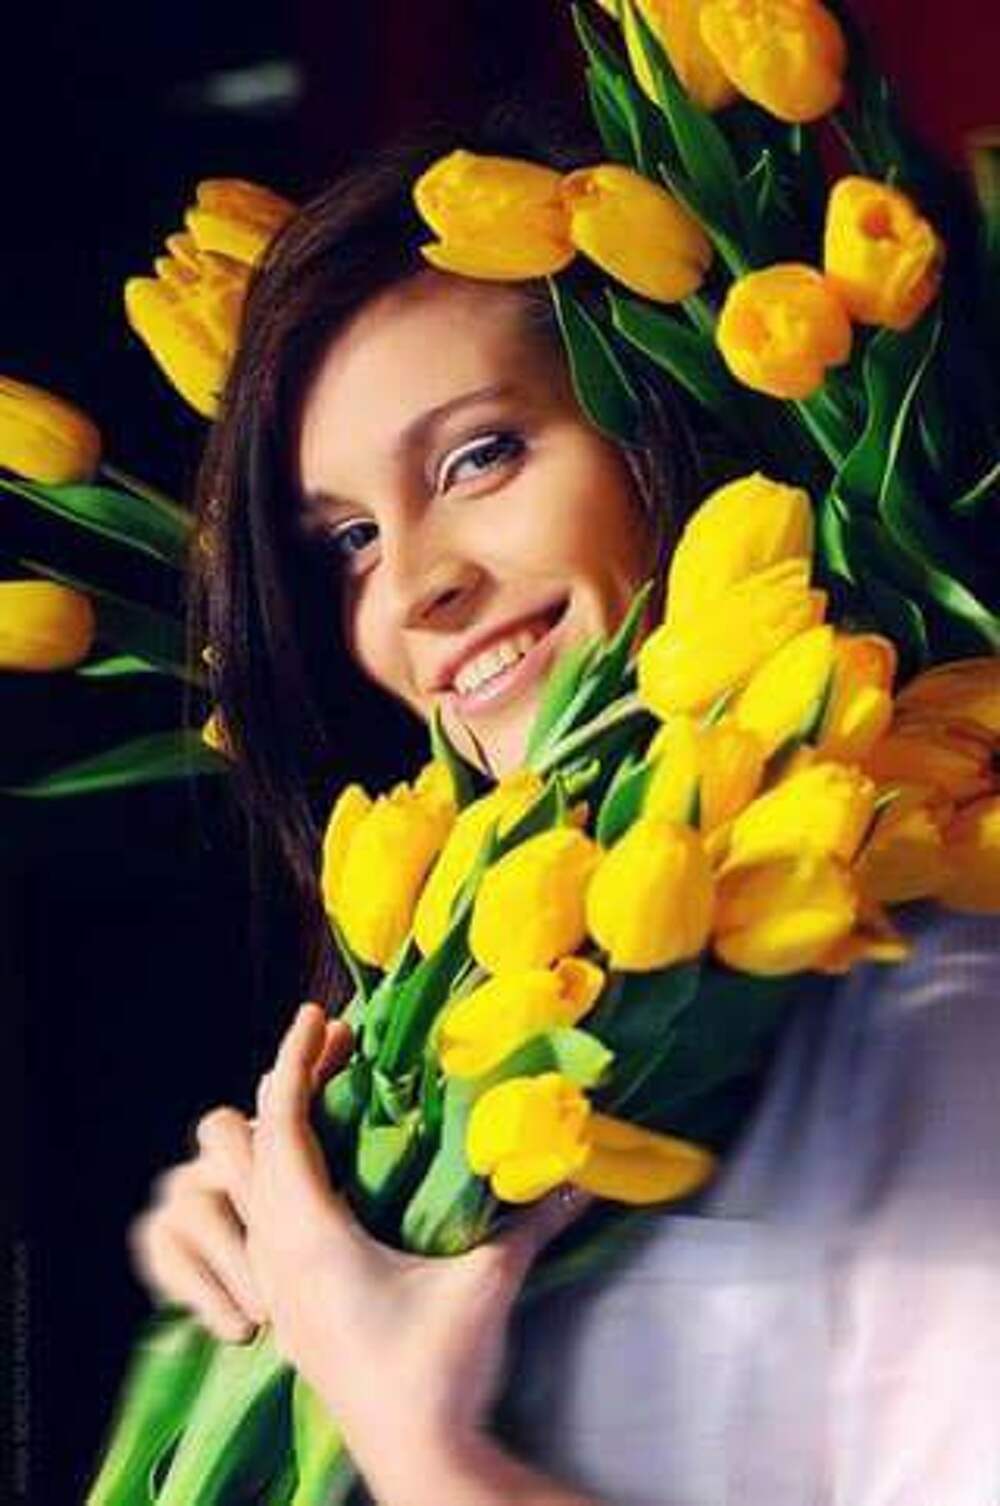 Женщина с тюльпанами